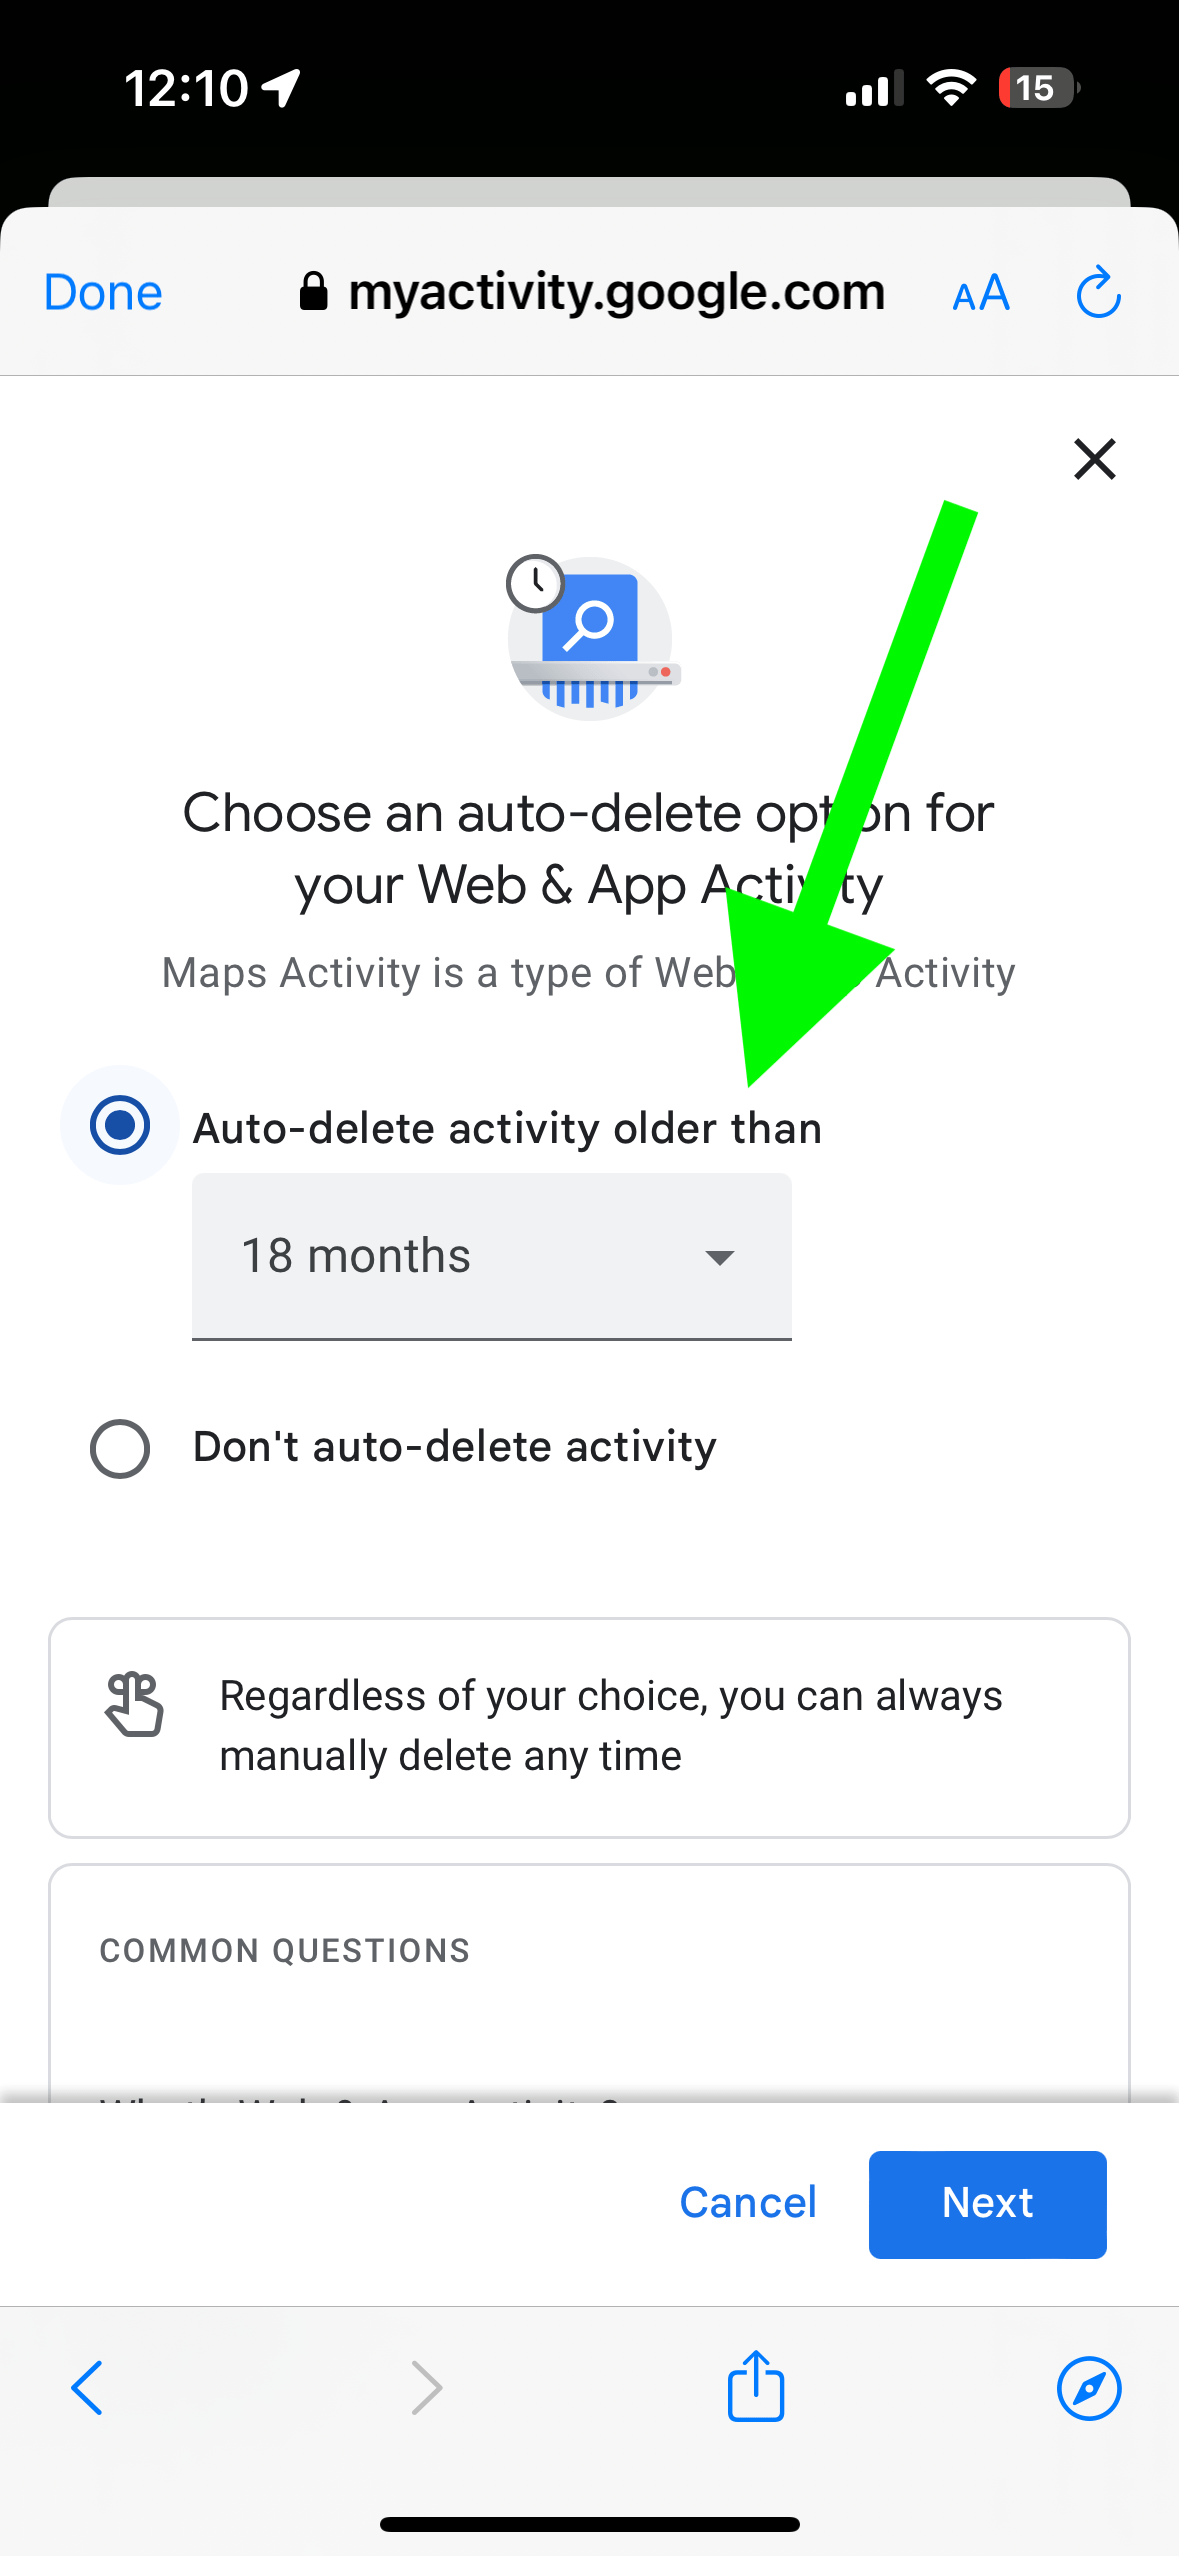 Auto-delete options